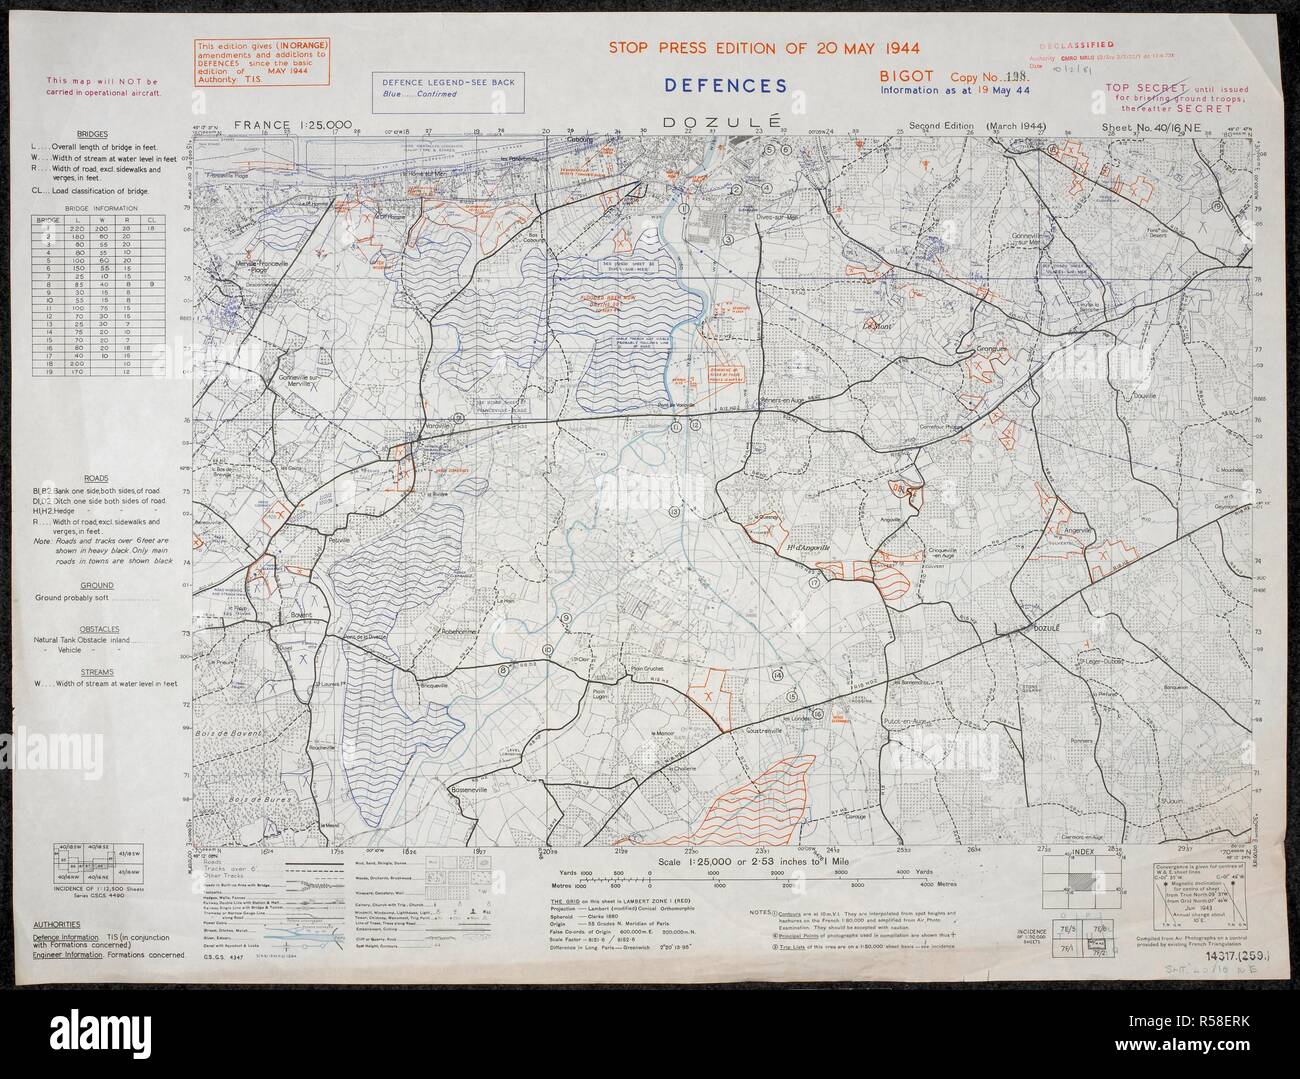 Difese - DozulÃ©, Francia. Una mappa della Seconda Guerra Mondiale. No.48 Commando RM passato il villaggio di Dozule dopo lo sbarco in Normandia. . Francia 1:25.000 difese, razzista. [Londra] : Ufficio di guerra, 1944. Fonte: Mappe 14317.(259). Foto Stock